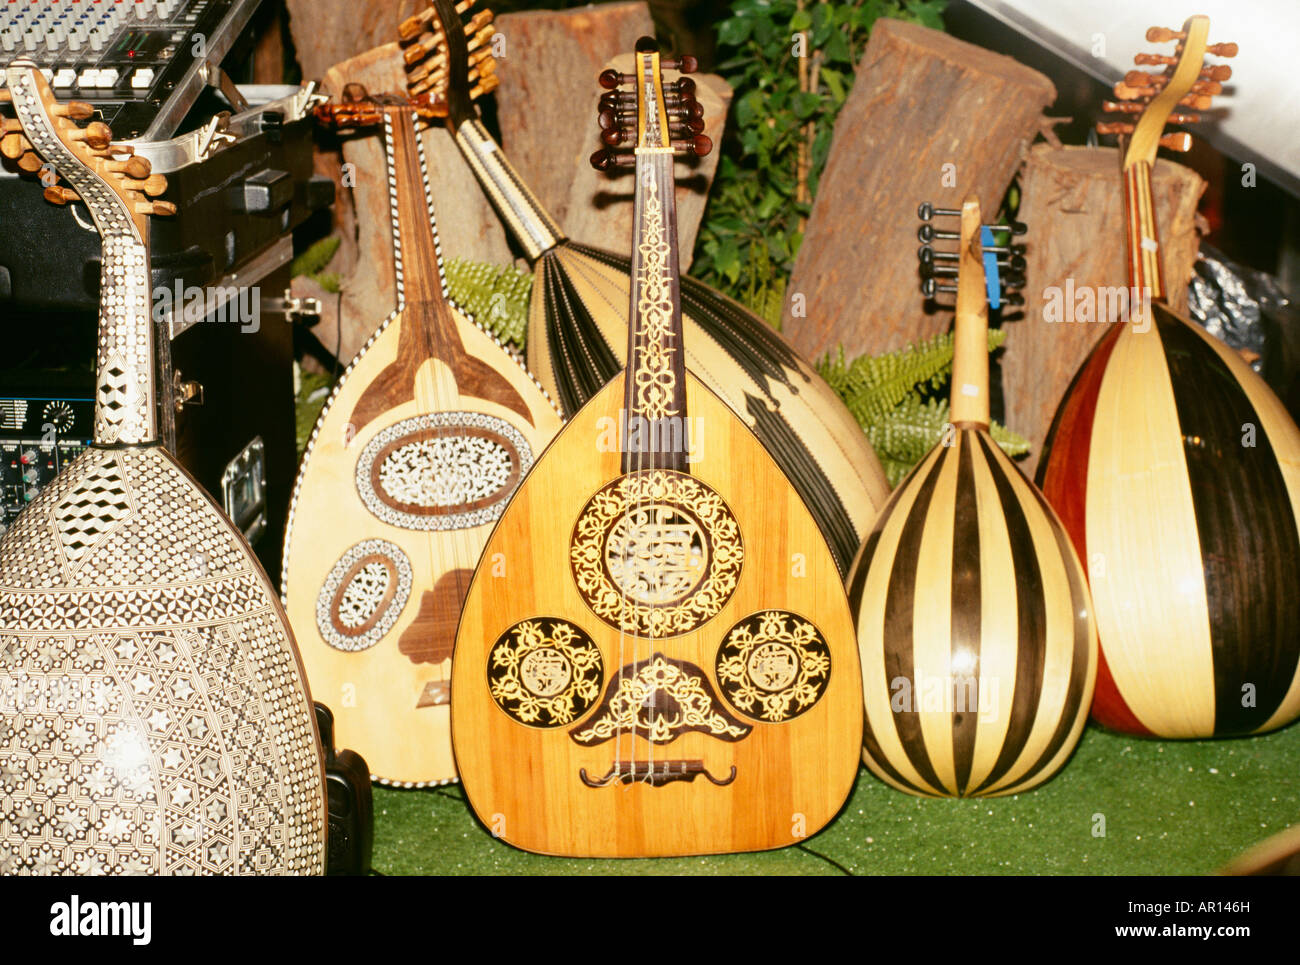 Stringed Musikinstrumente in verschiedenen Formen und Größen sind an einer Stelle angeordnet. Stockfoto